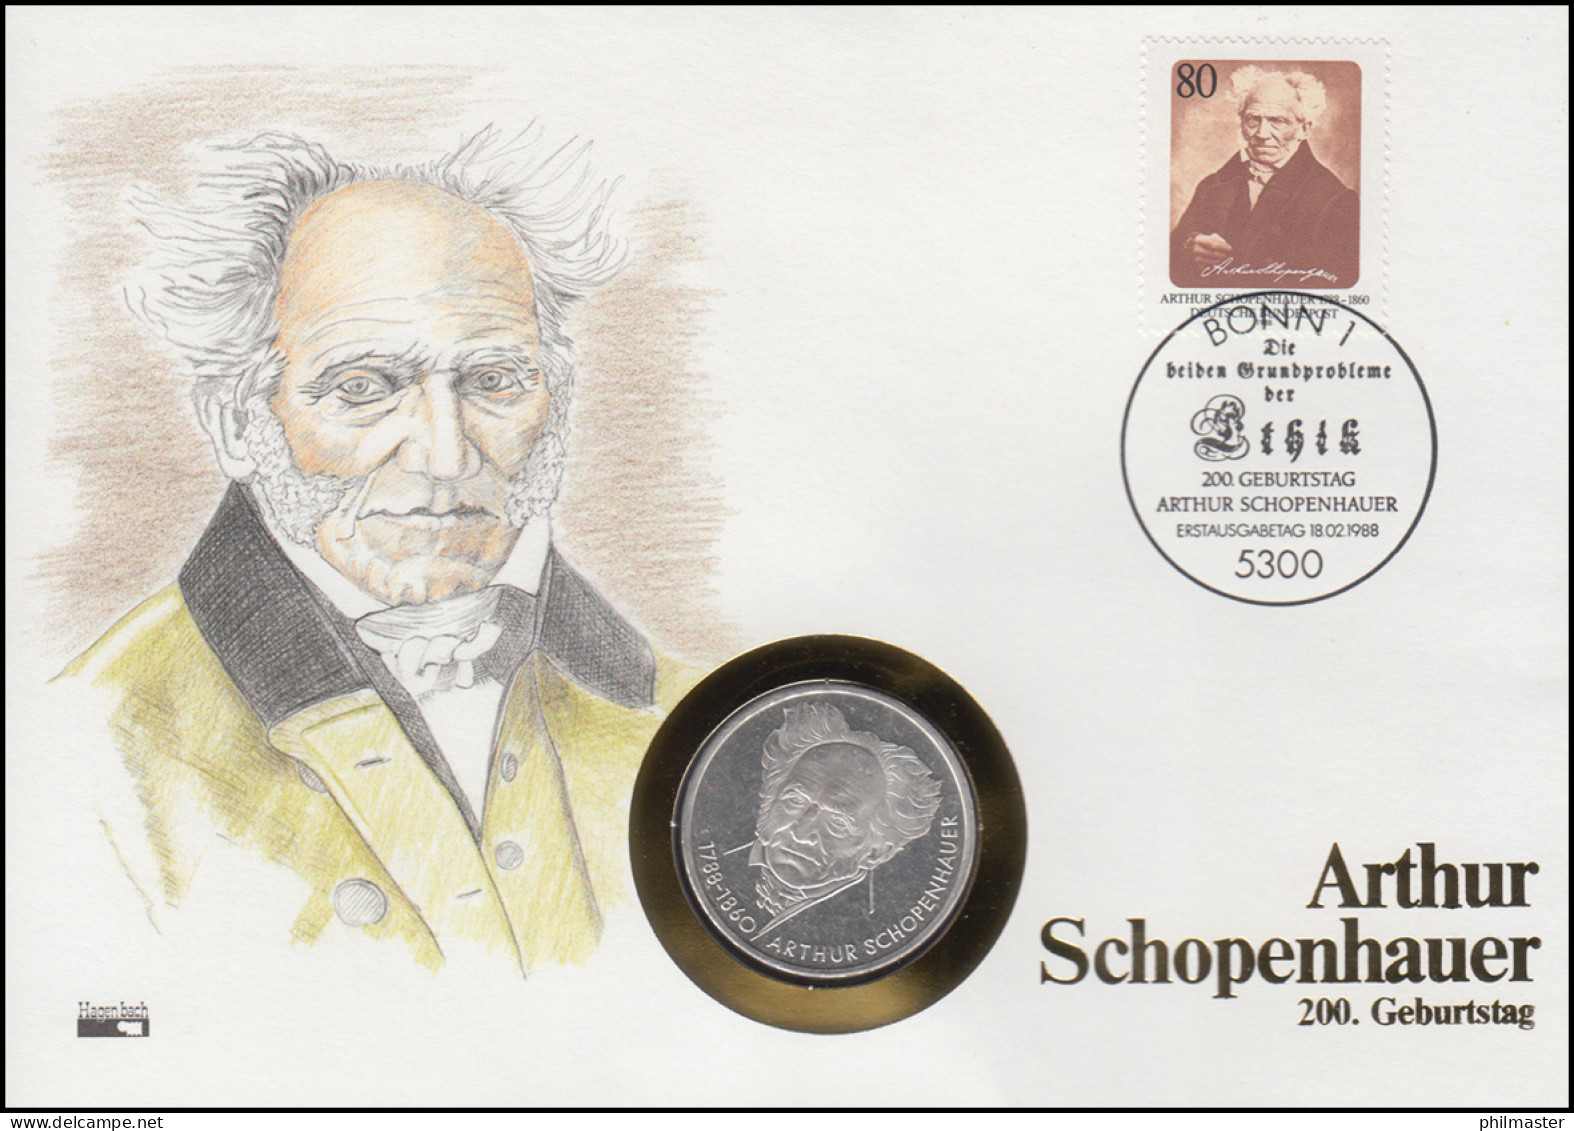 Numisbrief Arthur Schopenhauer, 10 DM / 80 Pf., ESST Bonn 18.2.1988 - Coin Envelopes